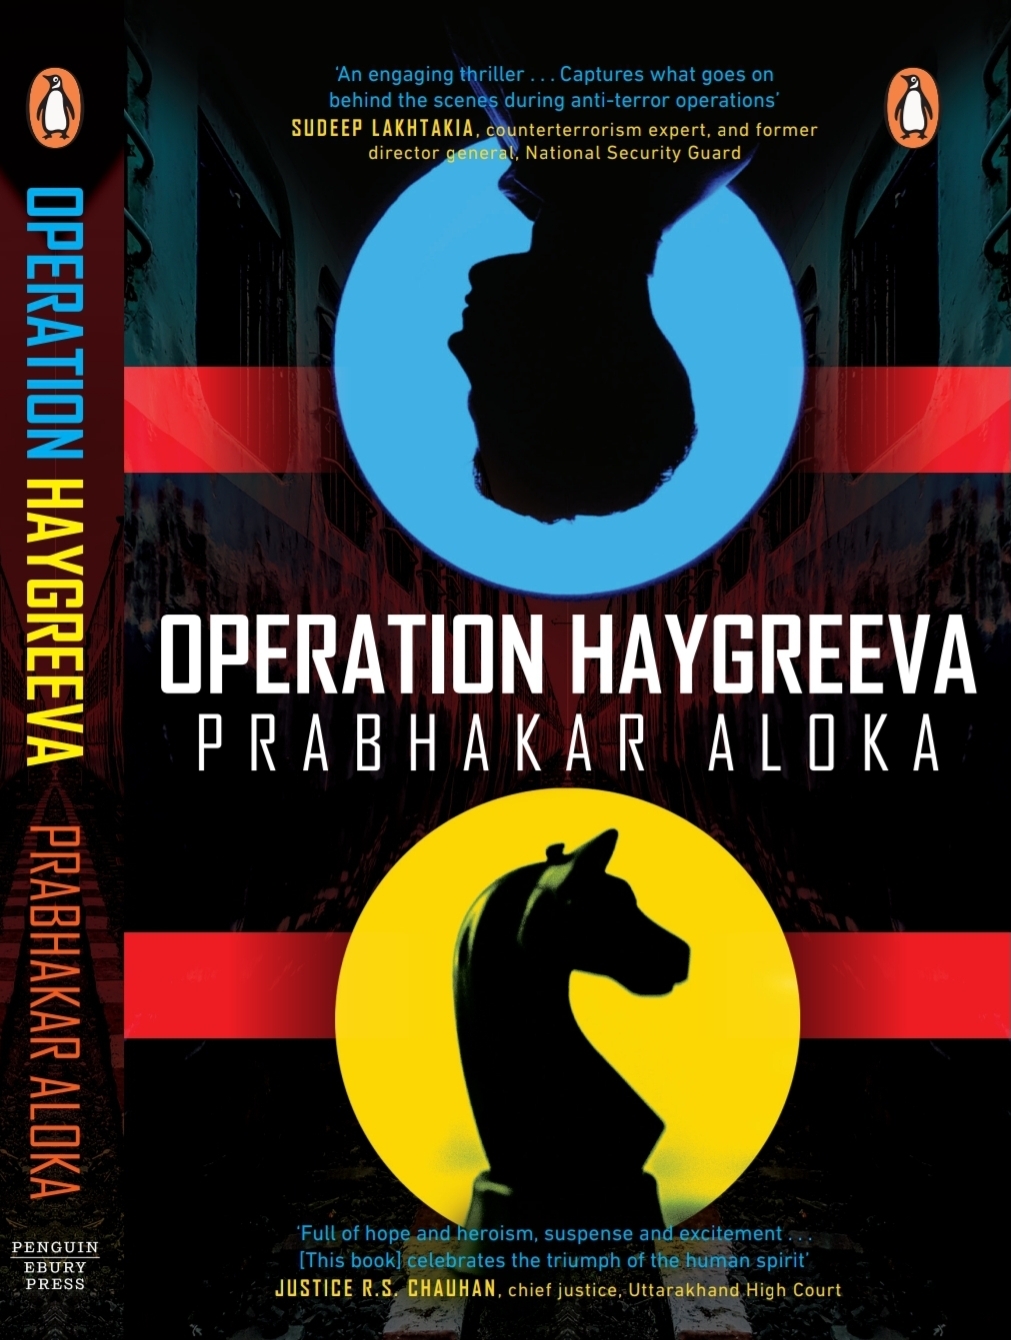 Book Reviews: Prabhakar Aloka’s Operation Haygreeva